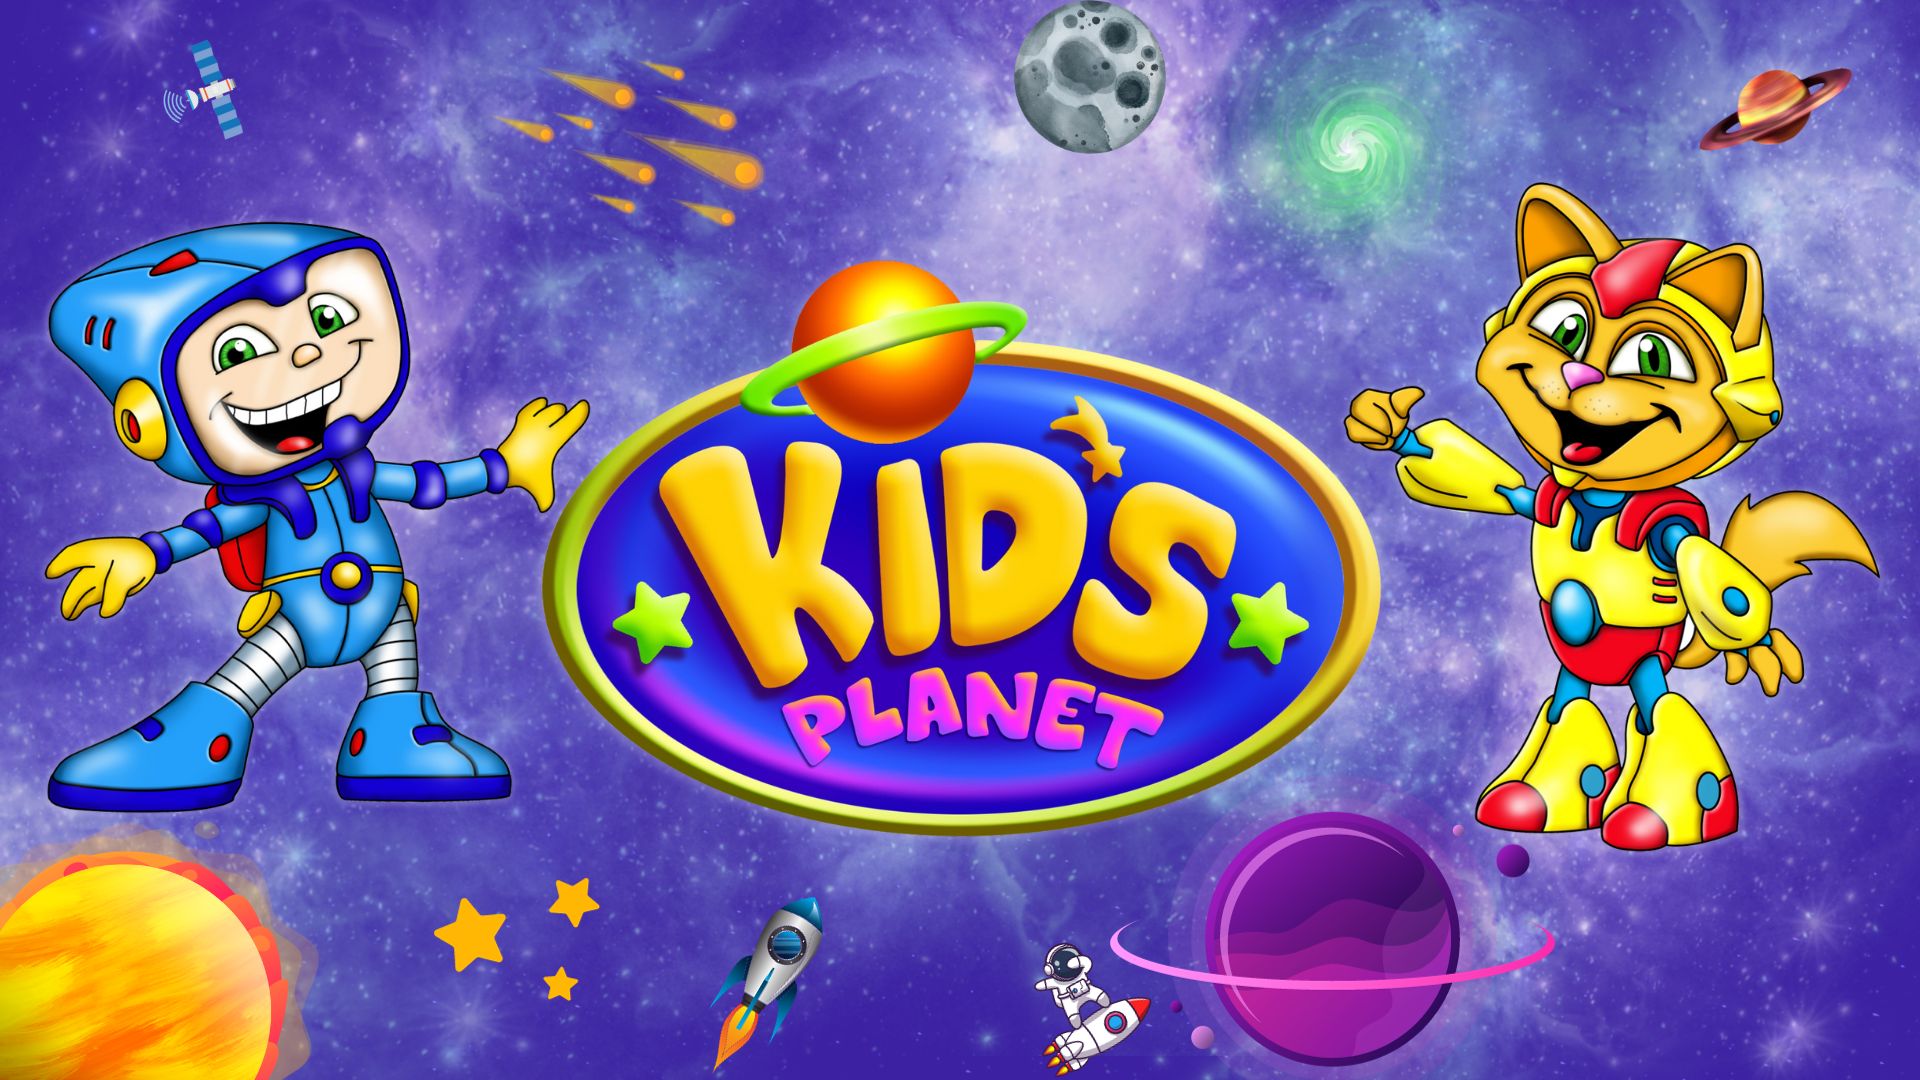 imagem com os personagens e logomarca do kids planet buffet infantil em jundiaí sp